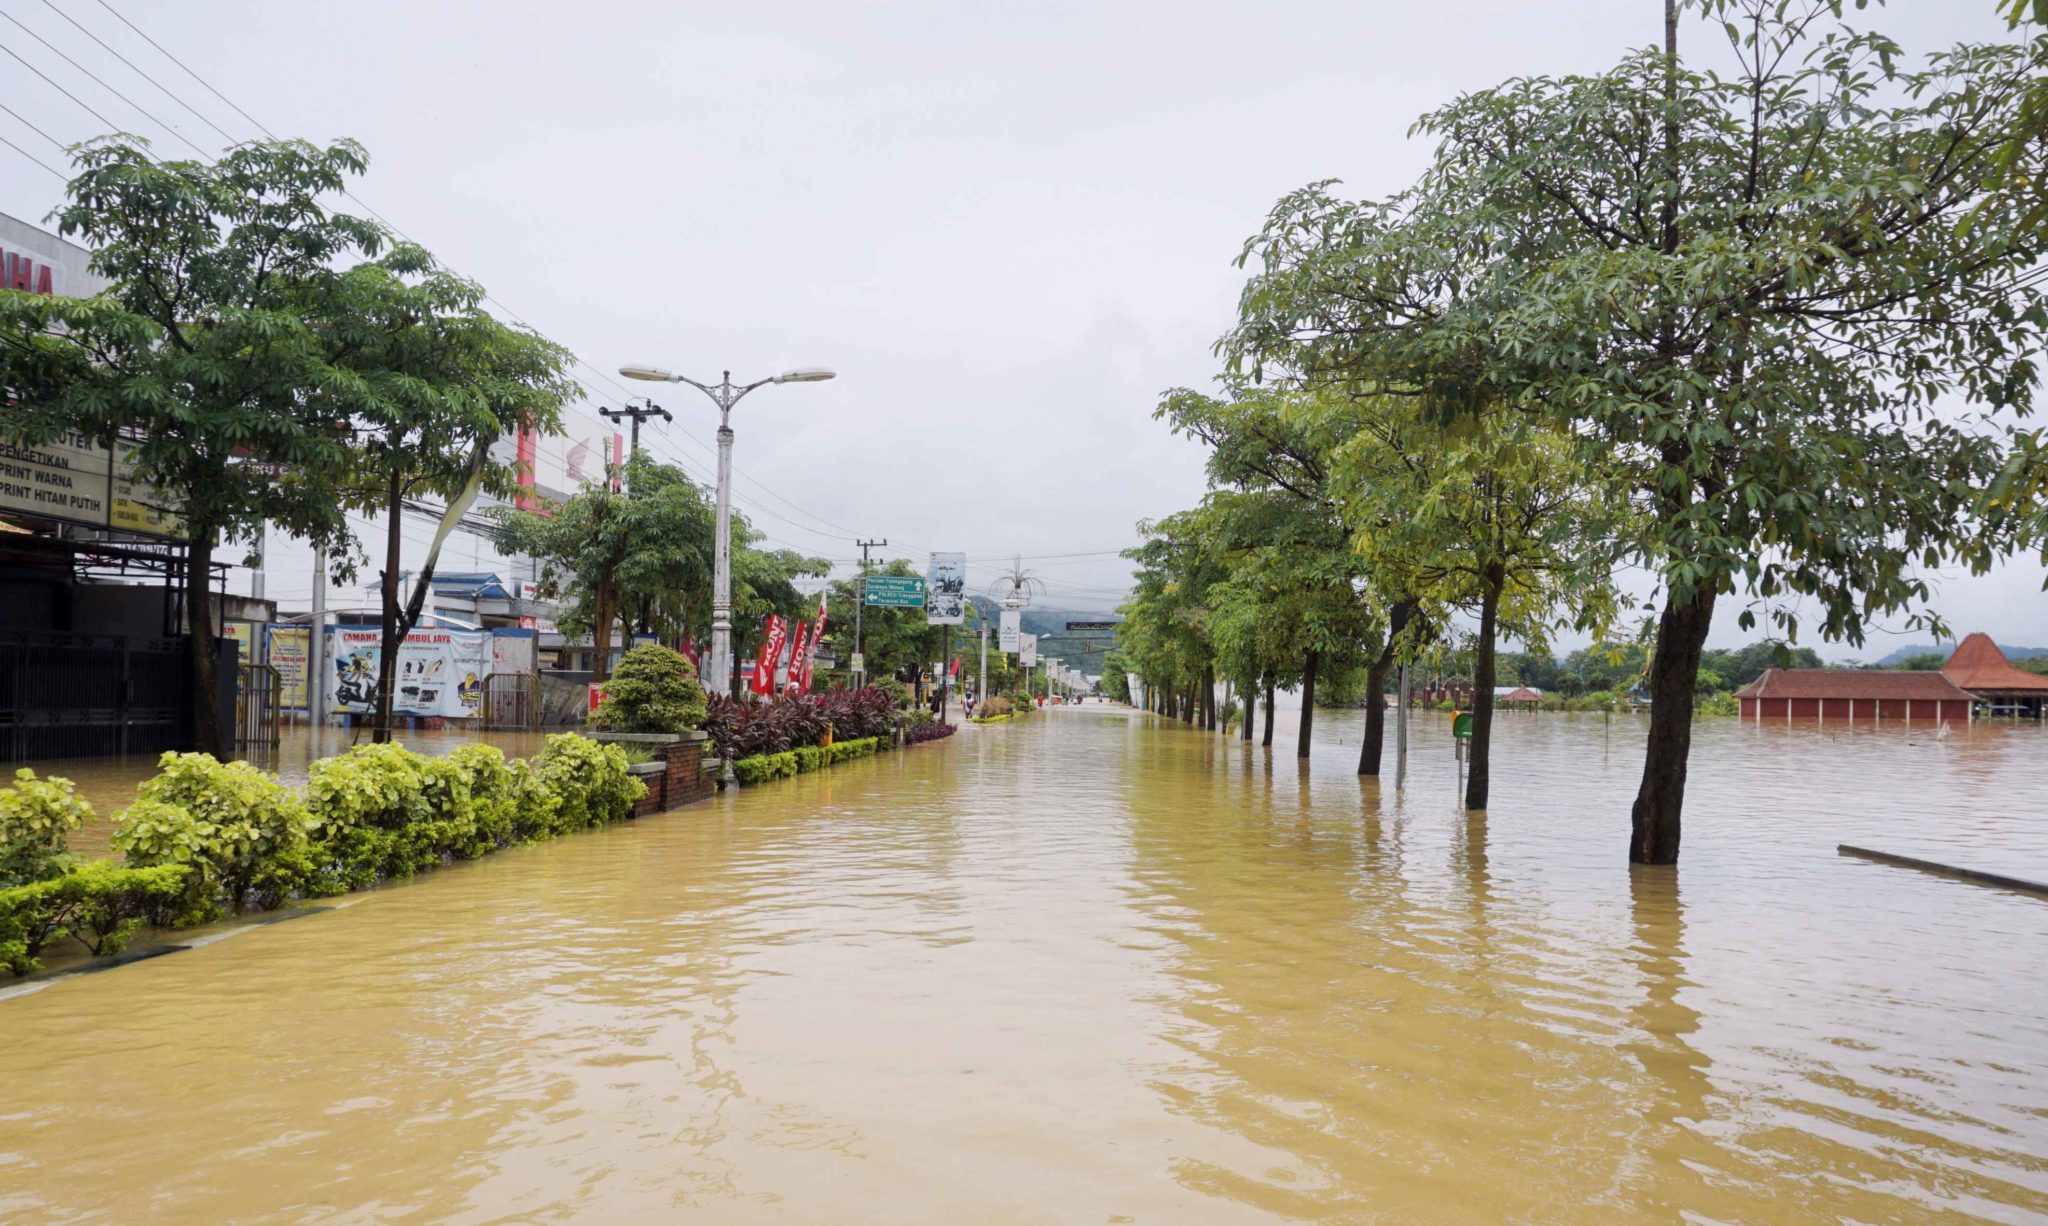 Jalur protokol di tengah kota Kabupaten Trenggalek yang terendam banjir, Selasa (18/10/22). Foto: A. Asnawi/ Mongabay Indonesia